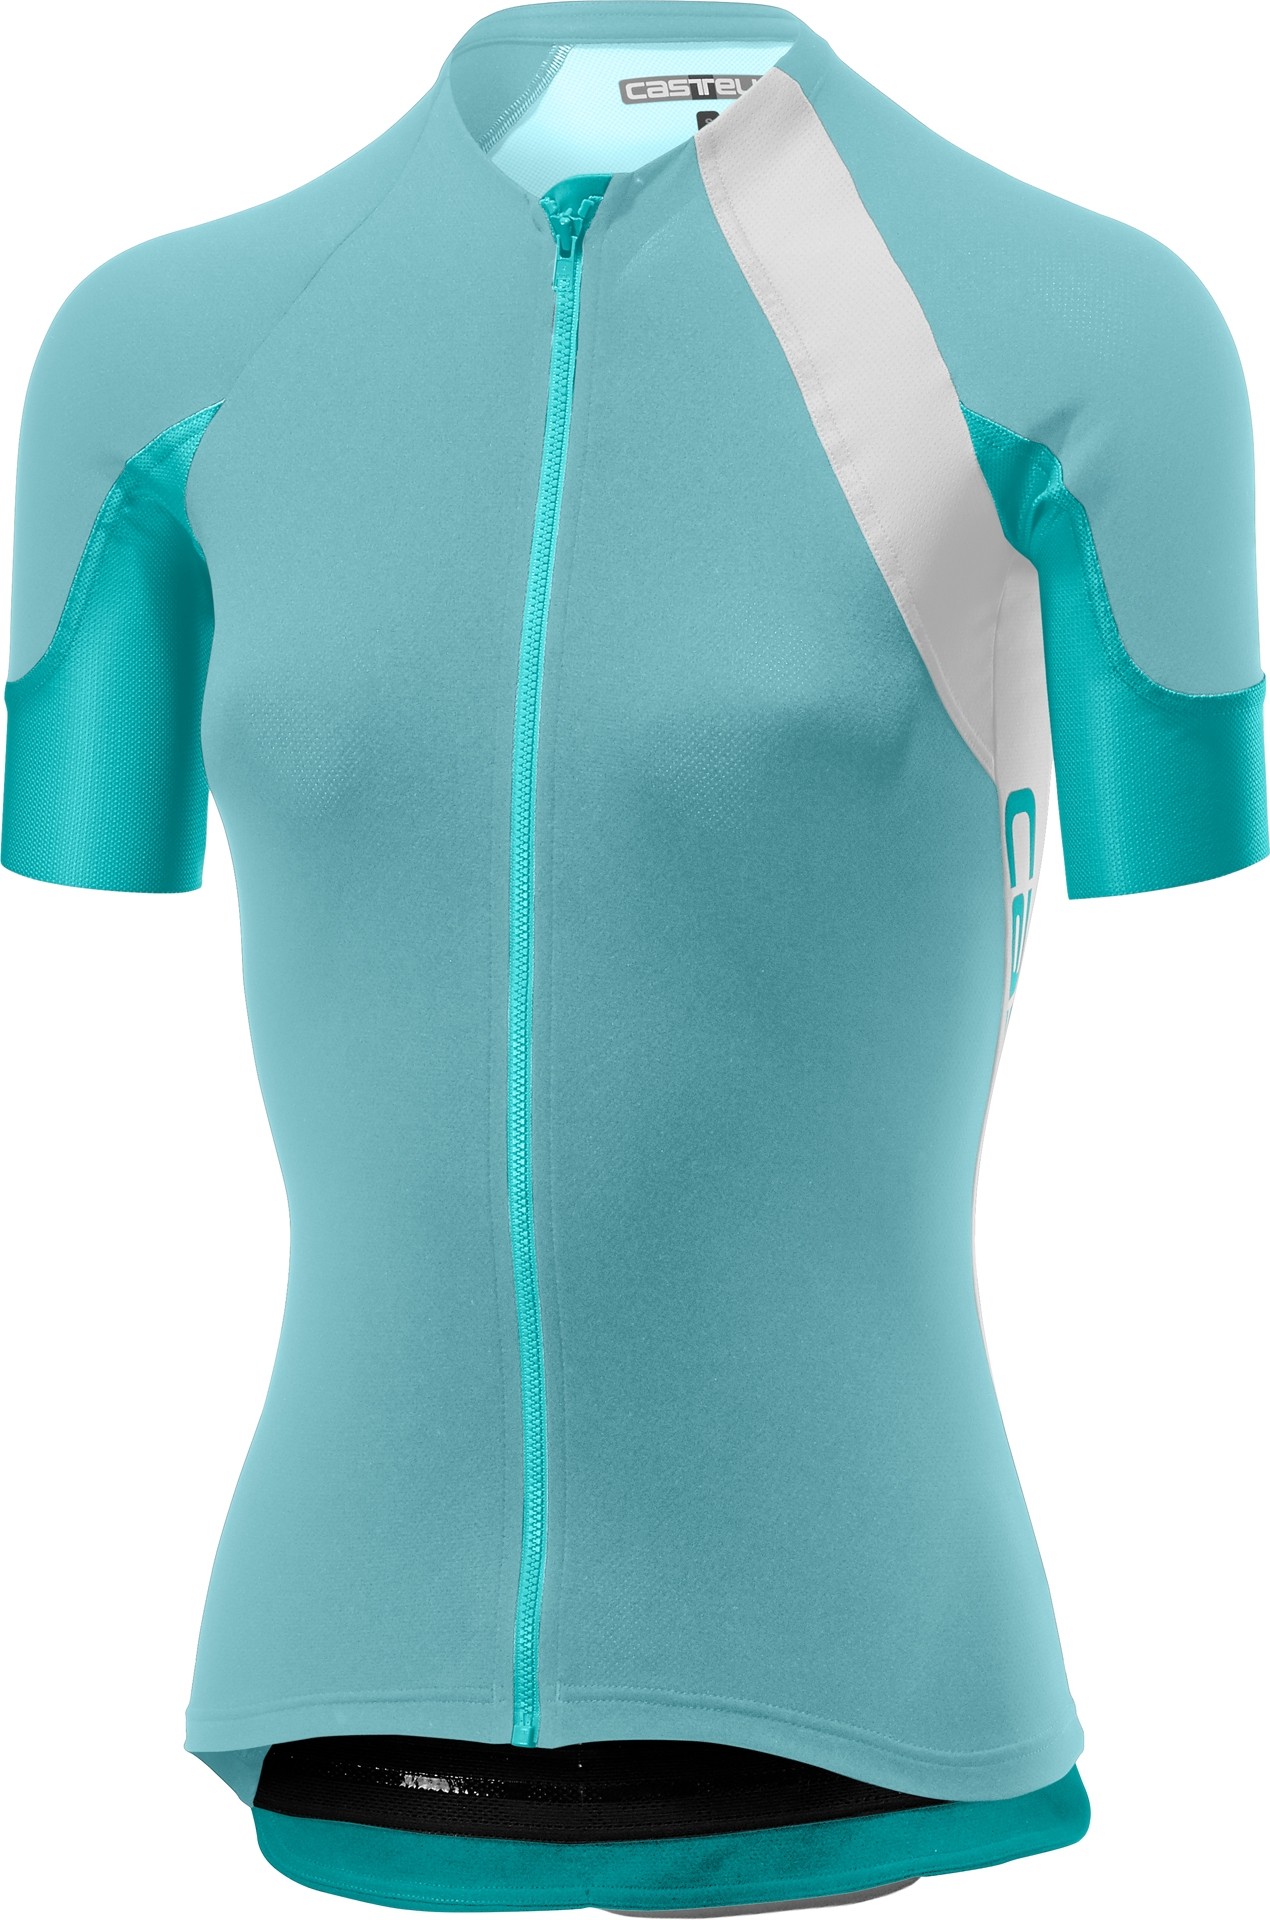 Castelli scheggia 2 maillot de cyclisme manches courtes femme aruba bleu turquoise vert